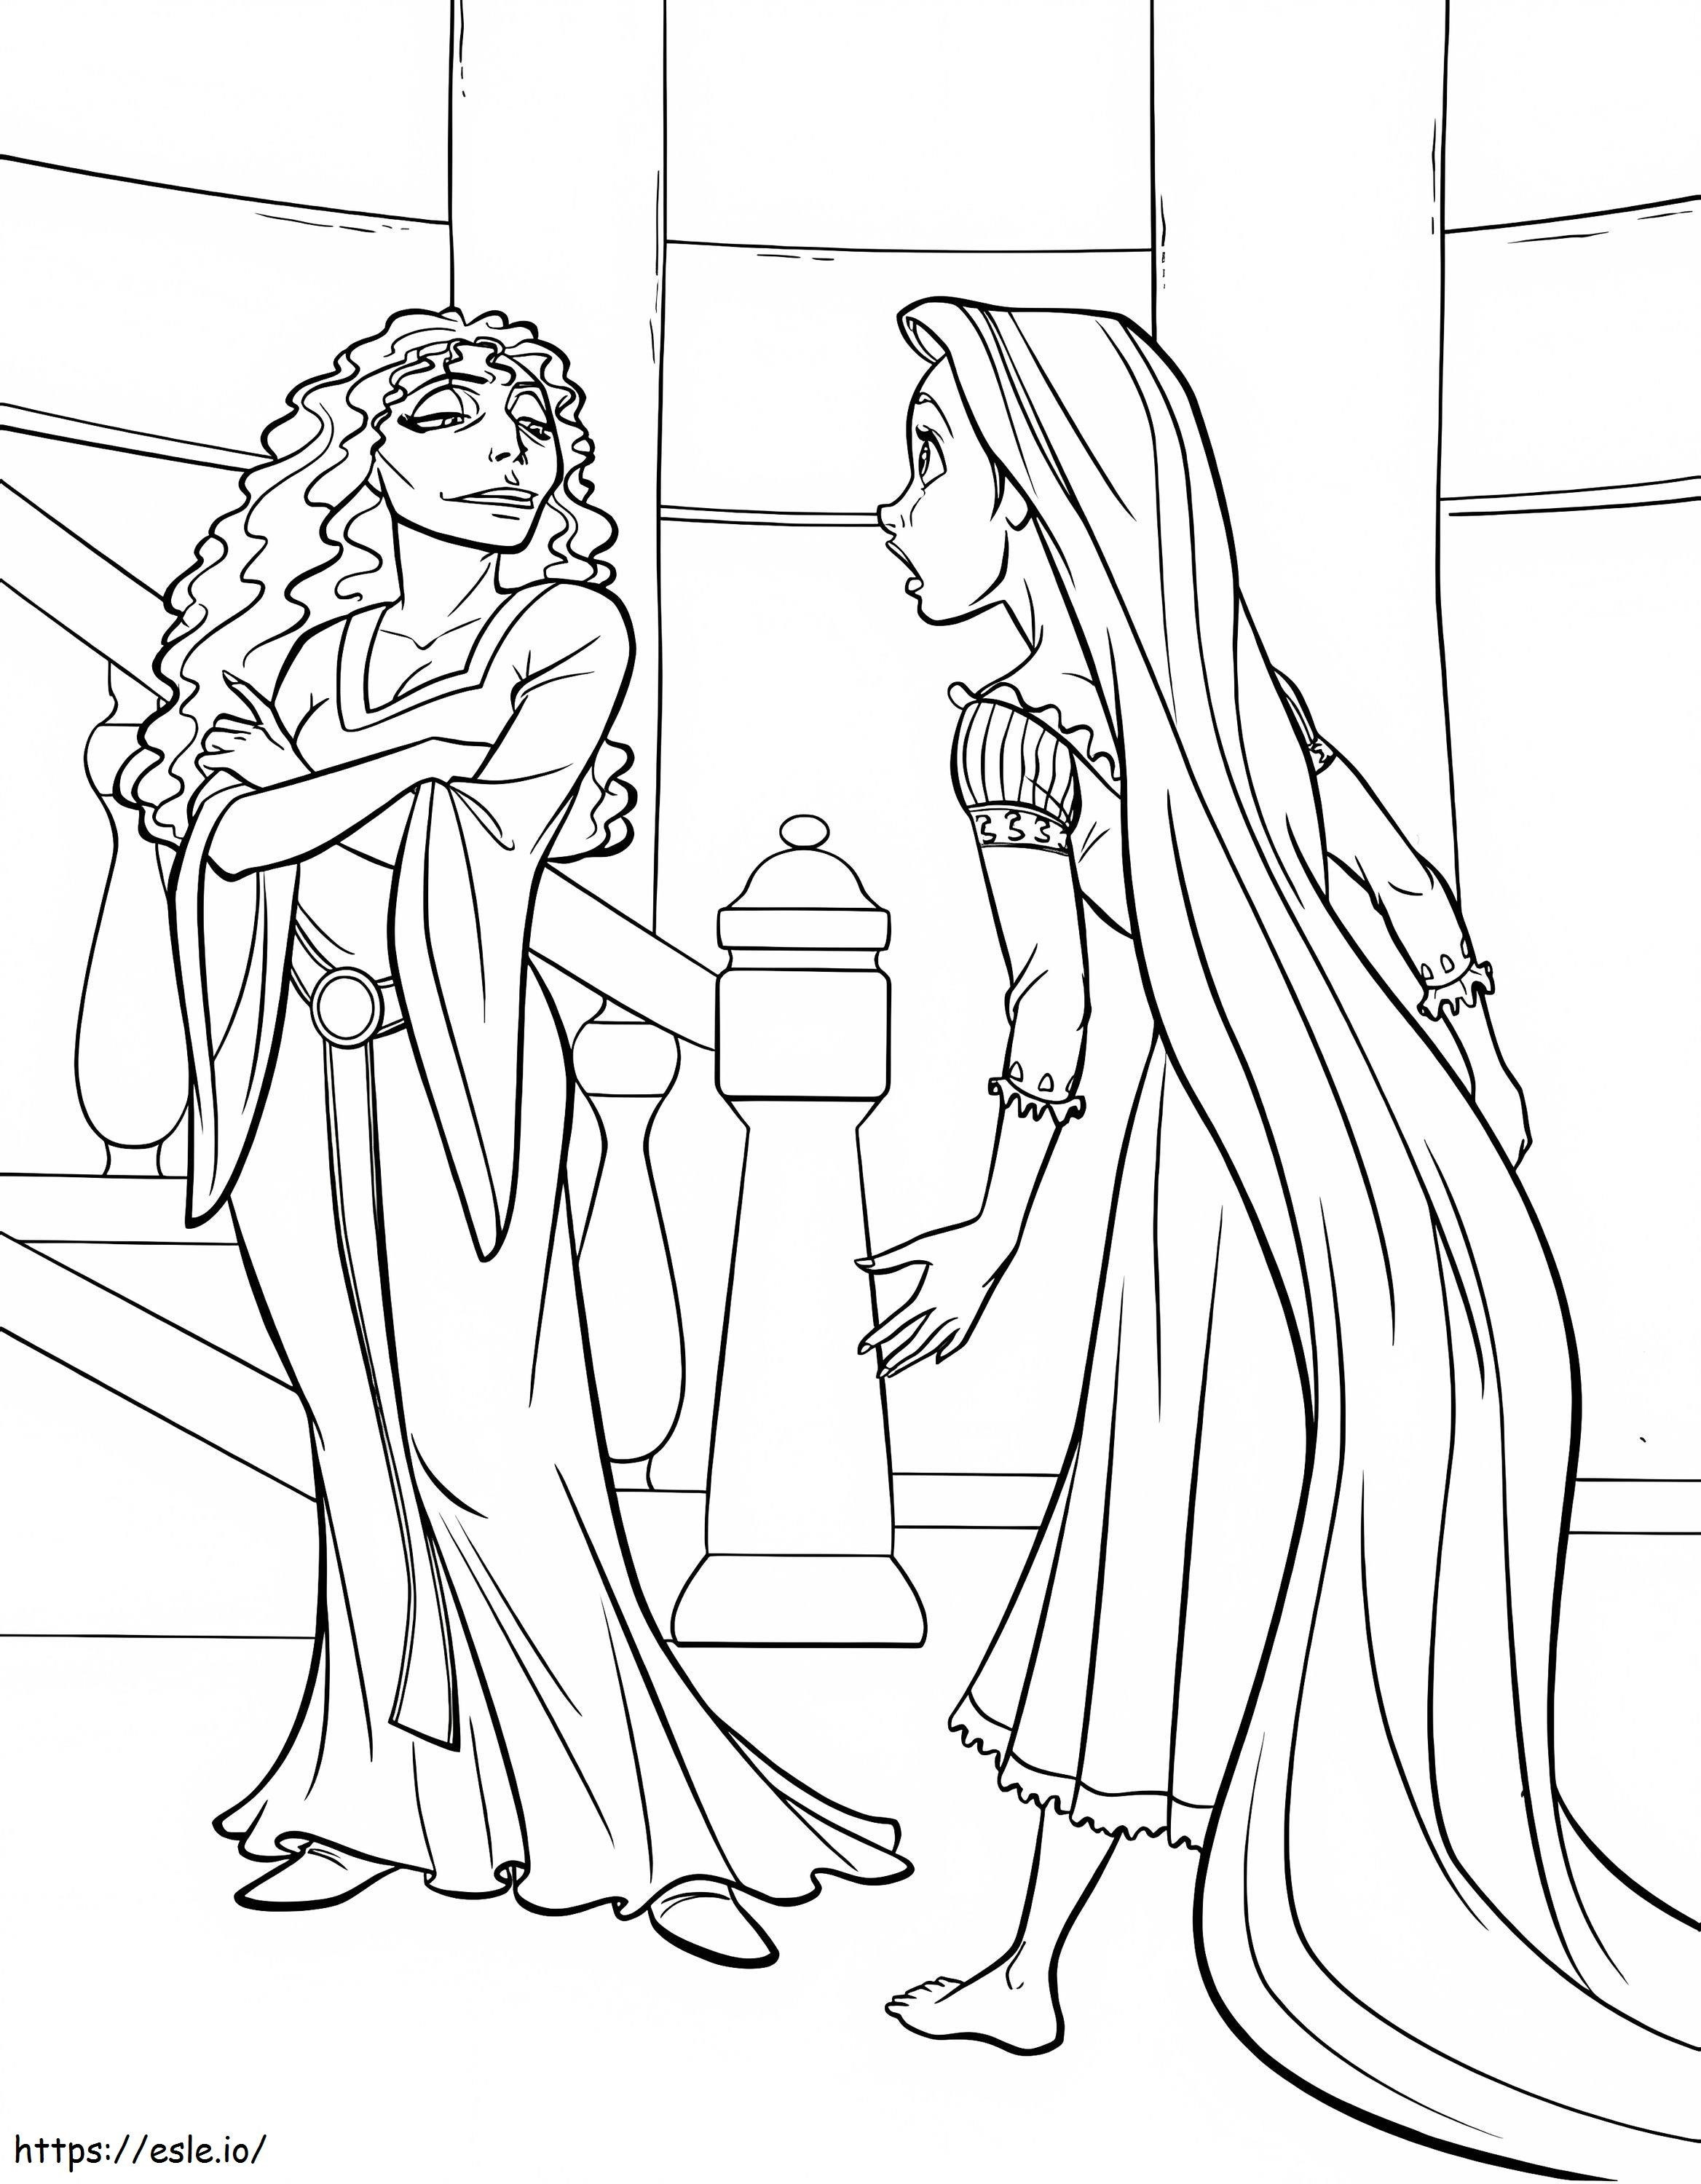 Rapunzel ja äiti Gothel värityskuva